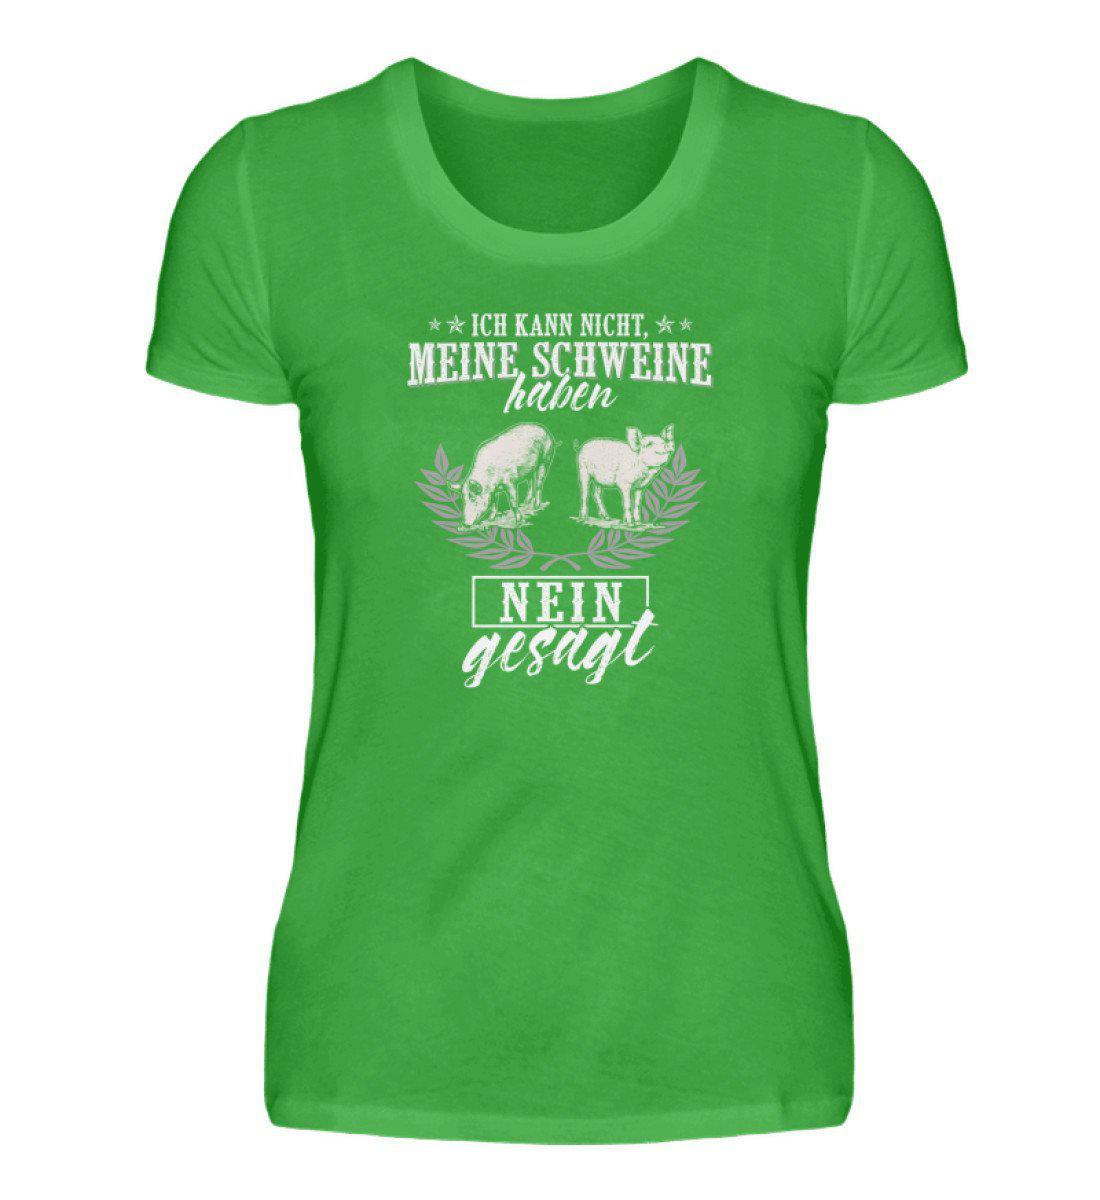 Schweine haben nein gesagt · Damen T-Shirt-Damen Basic T-Shirt-Green Apple-S-Agrarstarz